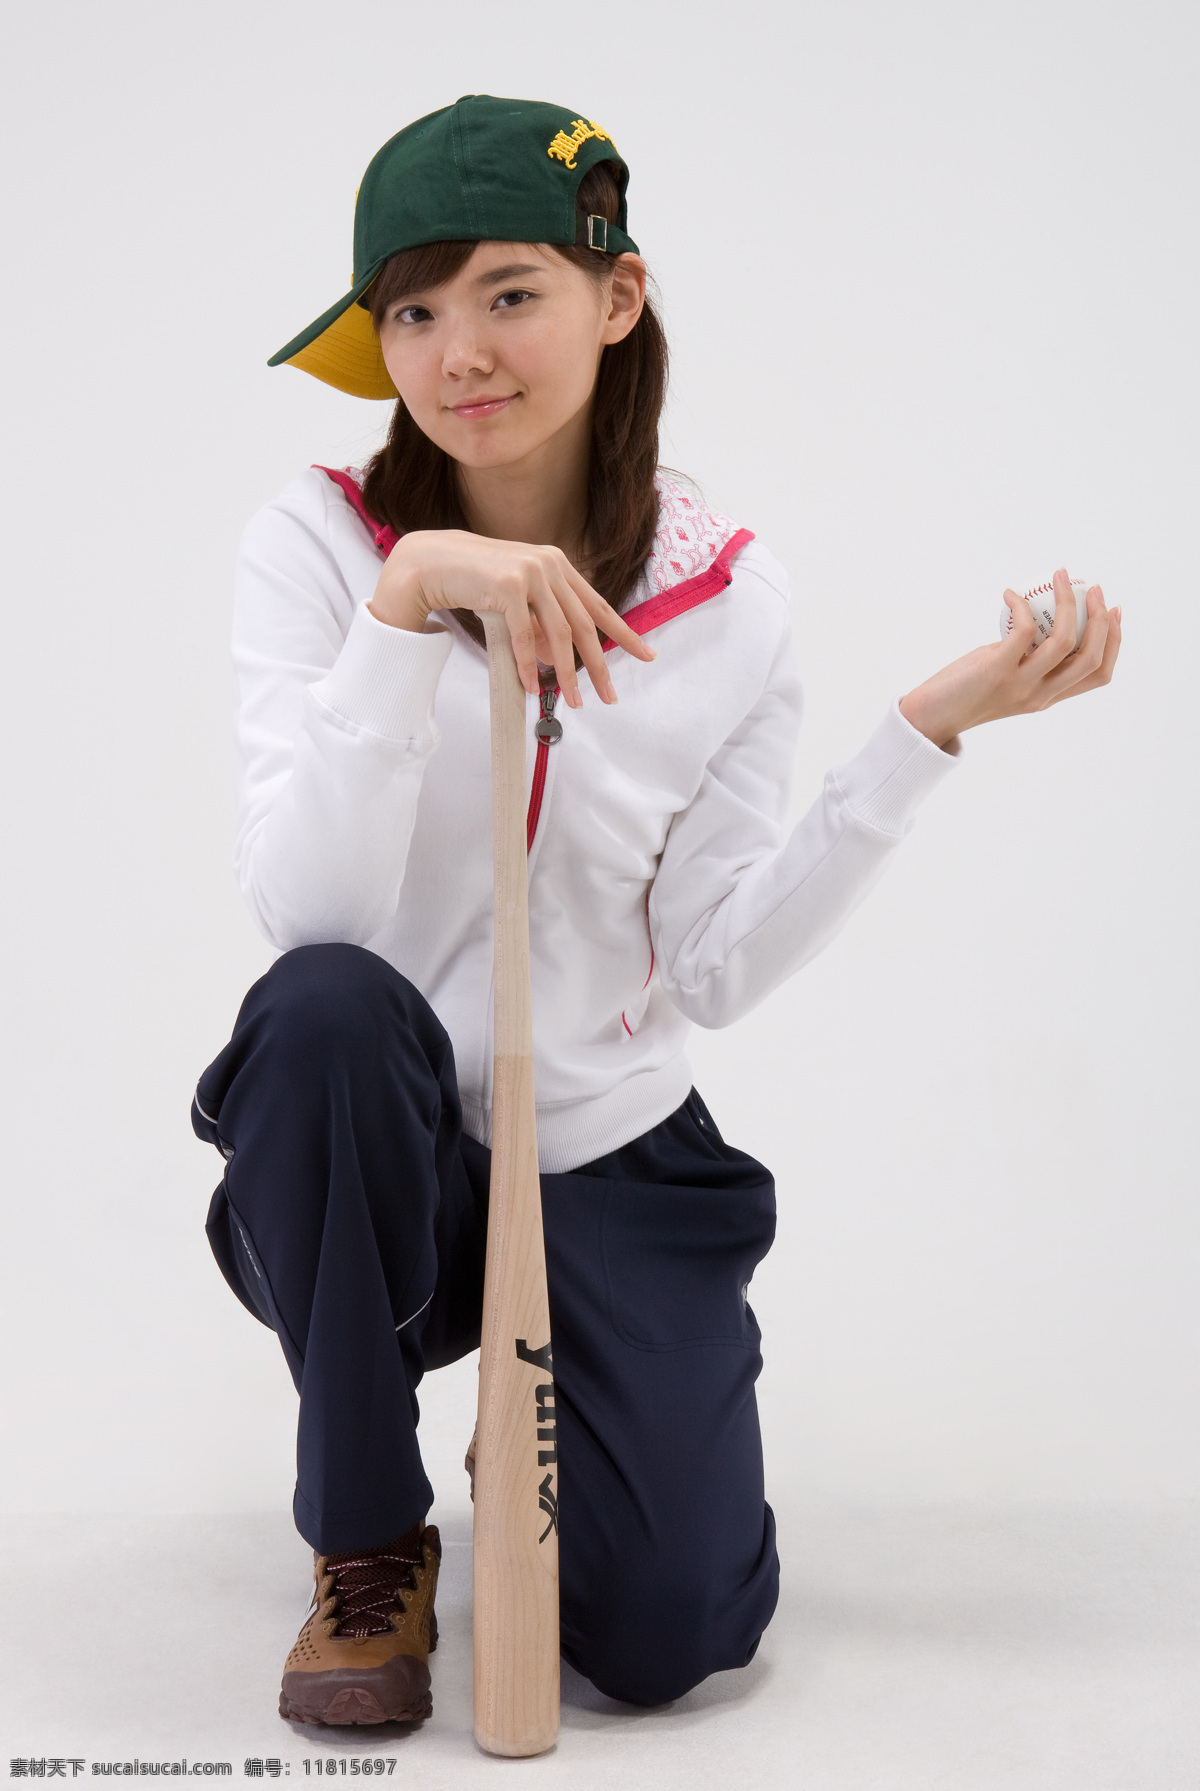 棒球 阳光 女生 学生 漂亮女孩 服装 运动装 帽子 休闲 运动 棍棒 打棒球 蹲着 表情 微笑 开心 高清图片 生活人物 人物图片